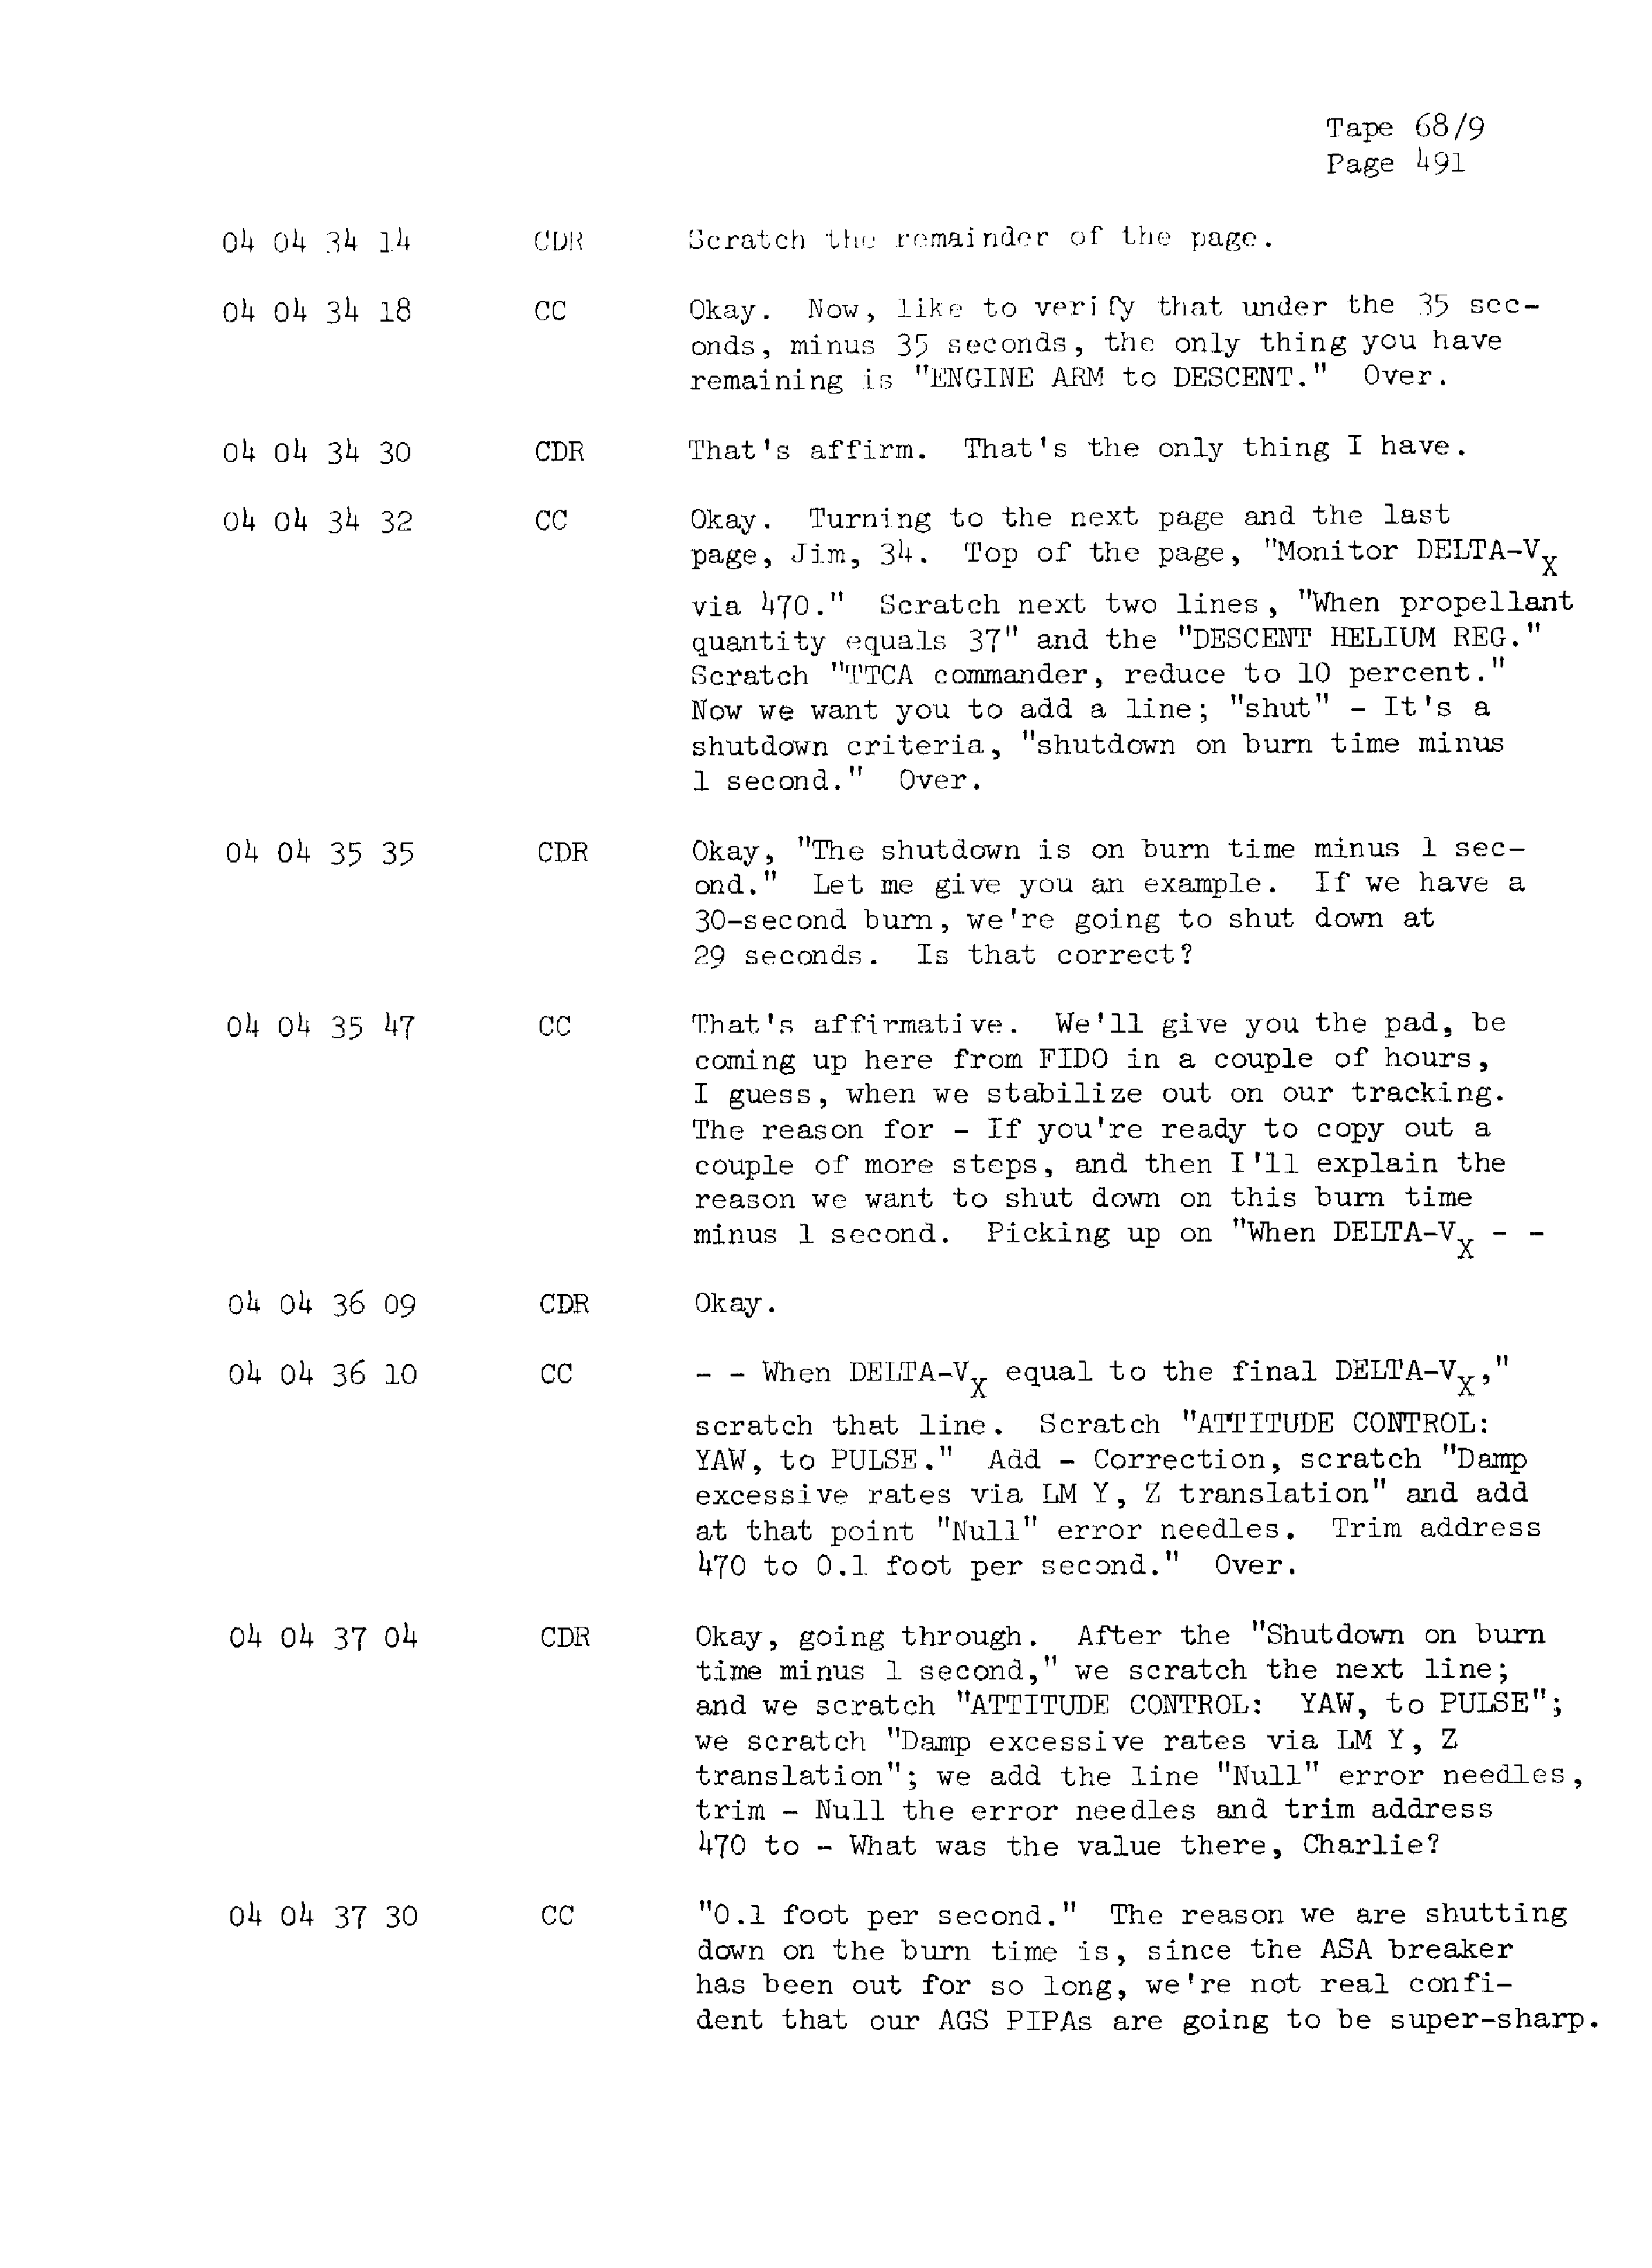 Page 498 of Apollo 13’s original transcript